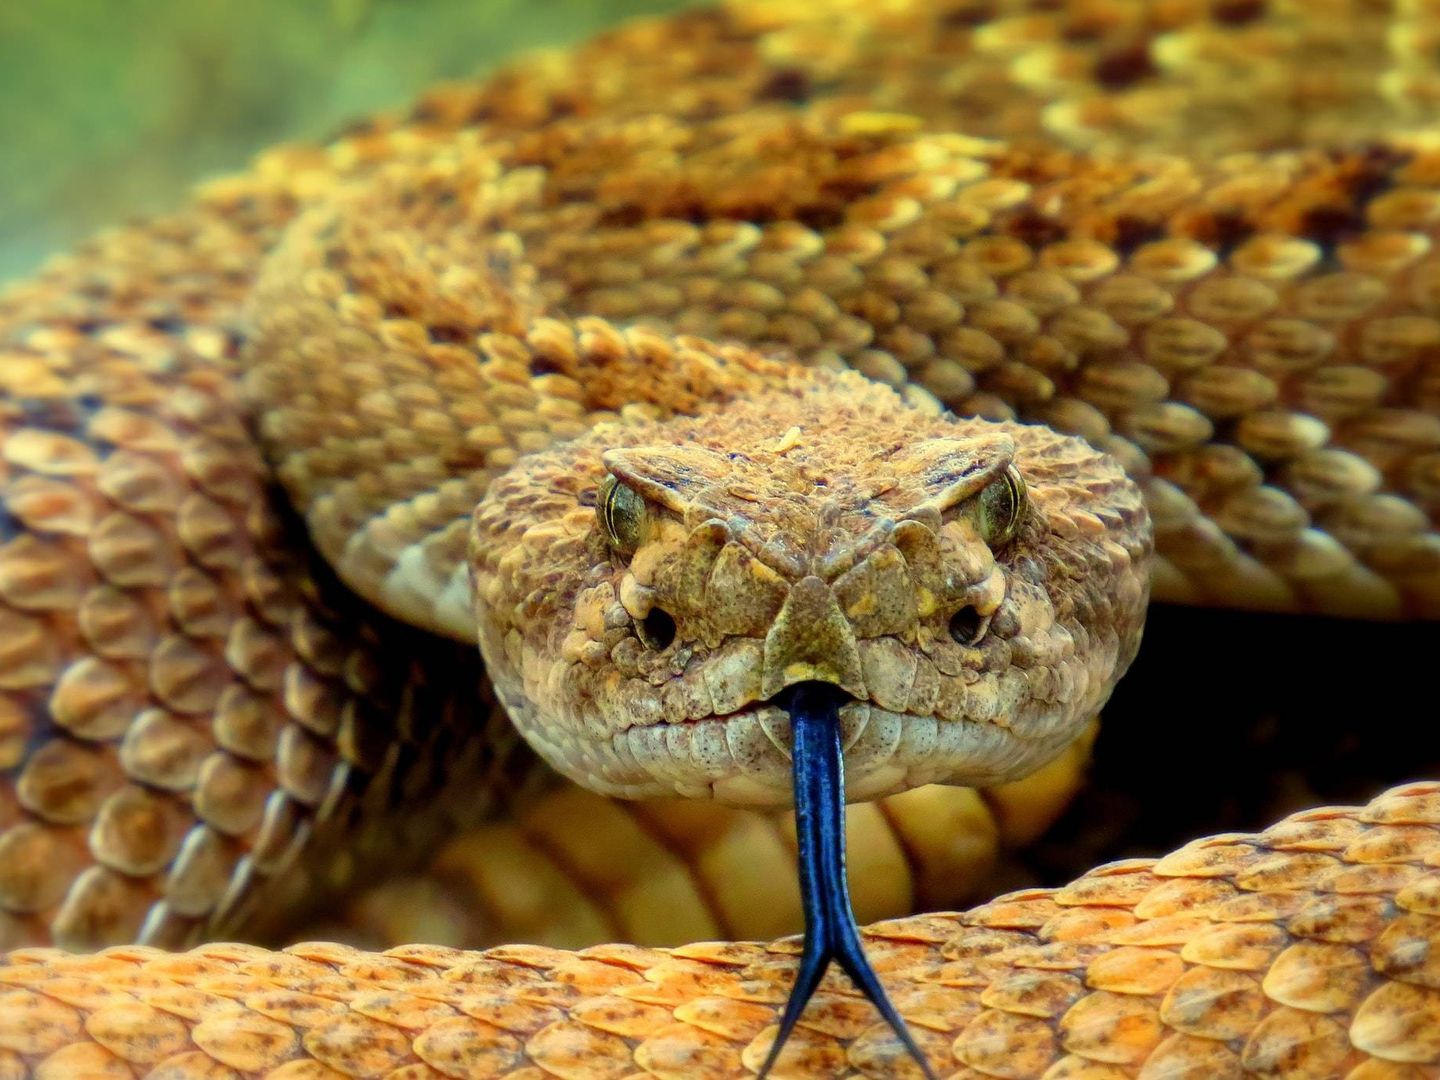 El veneno está compuesto de unas toxinas presentes en animales como el ciempiés y la serpiente de cascabel (Unsplash)